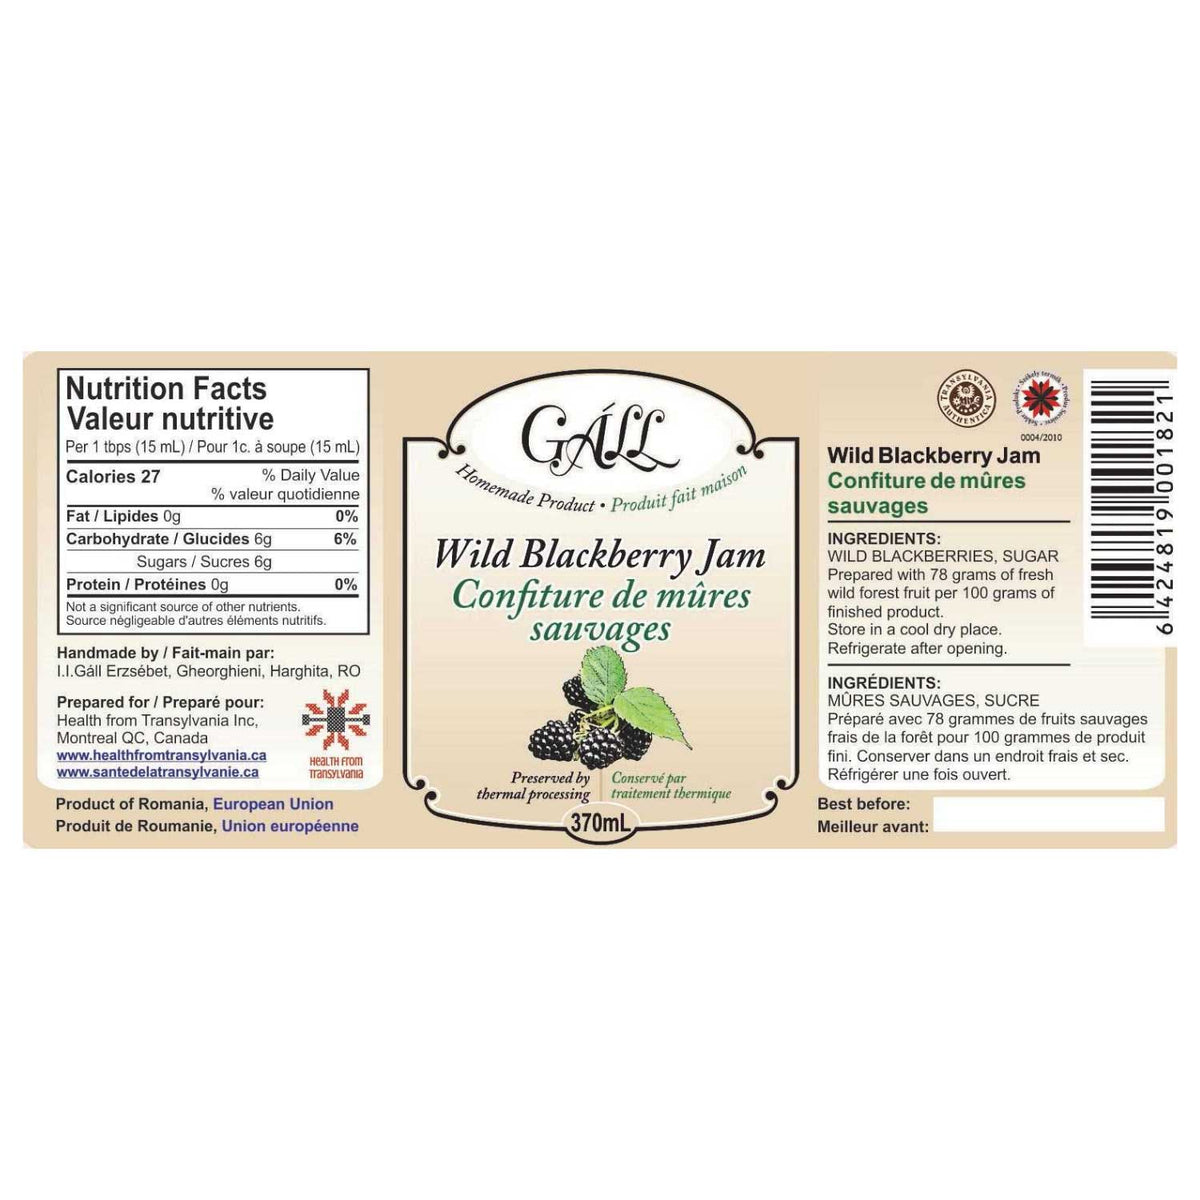 Artisanal Wild Blackberry Jam label Health from Europe